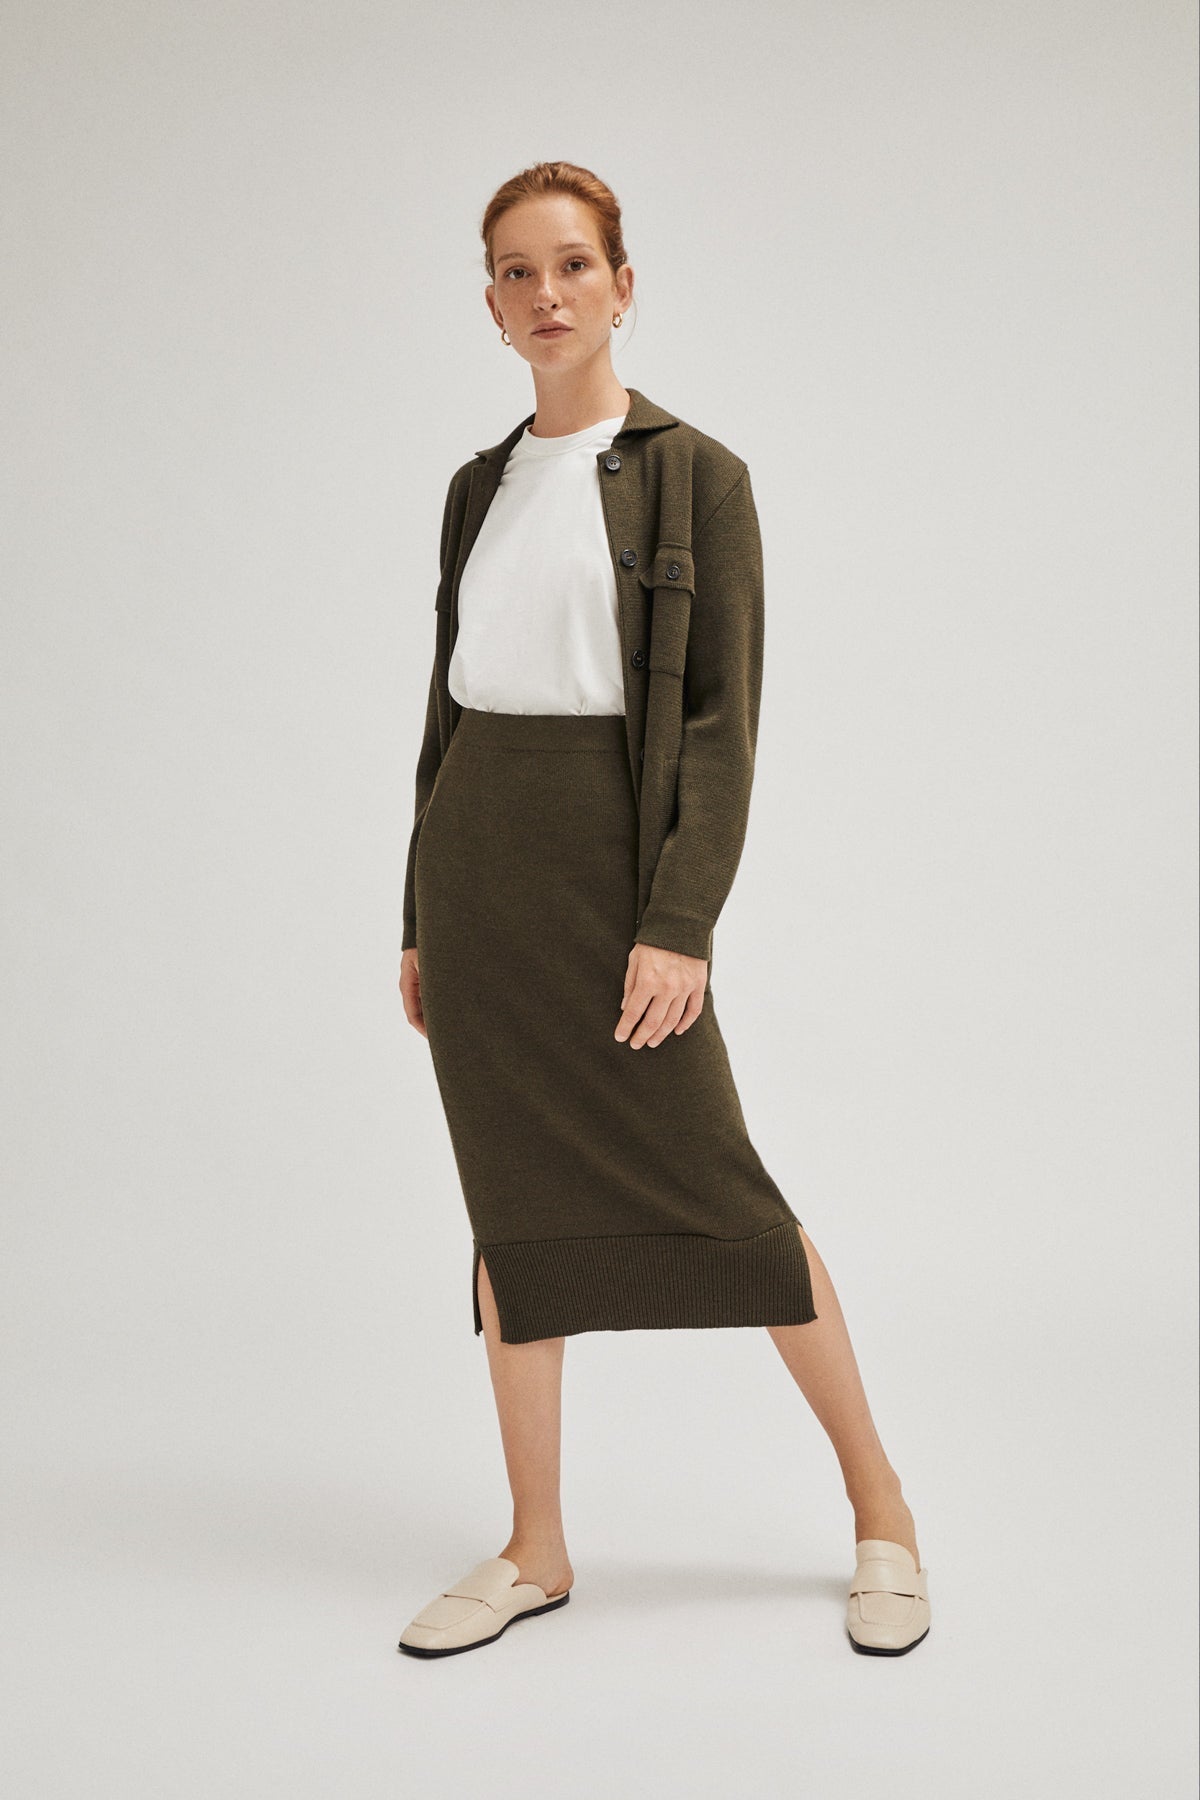 Military Green | The Merino Wool Skirt